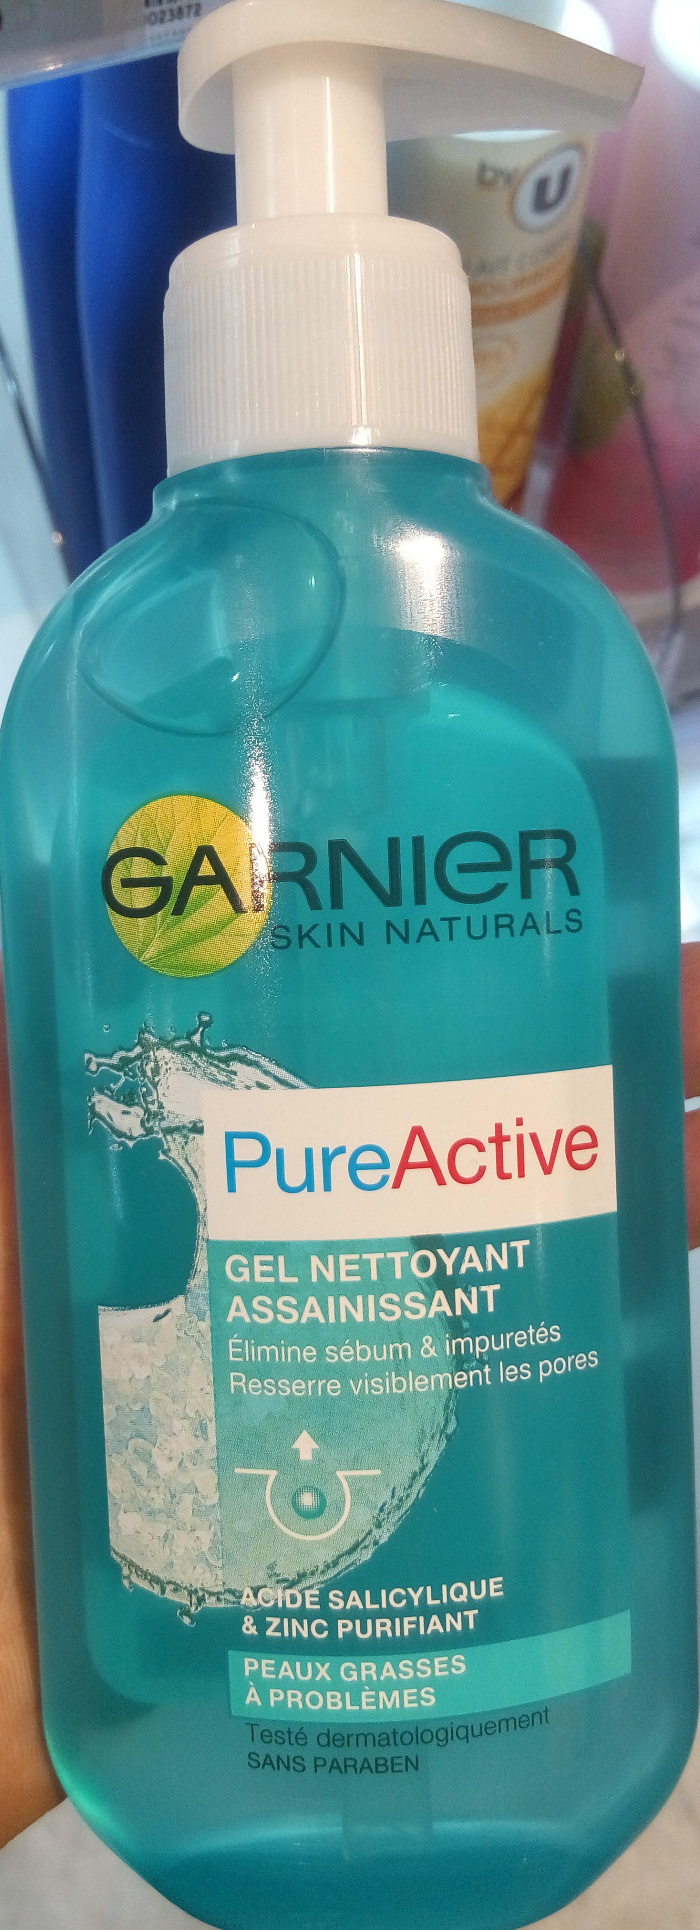 PureActive Gel nettoyant assainissant - Product - fr